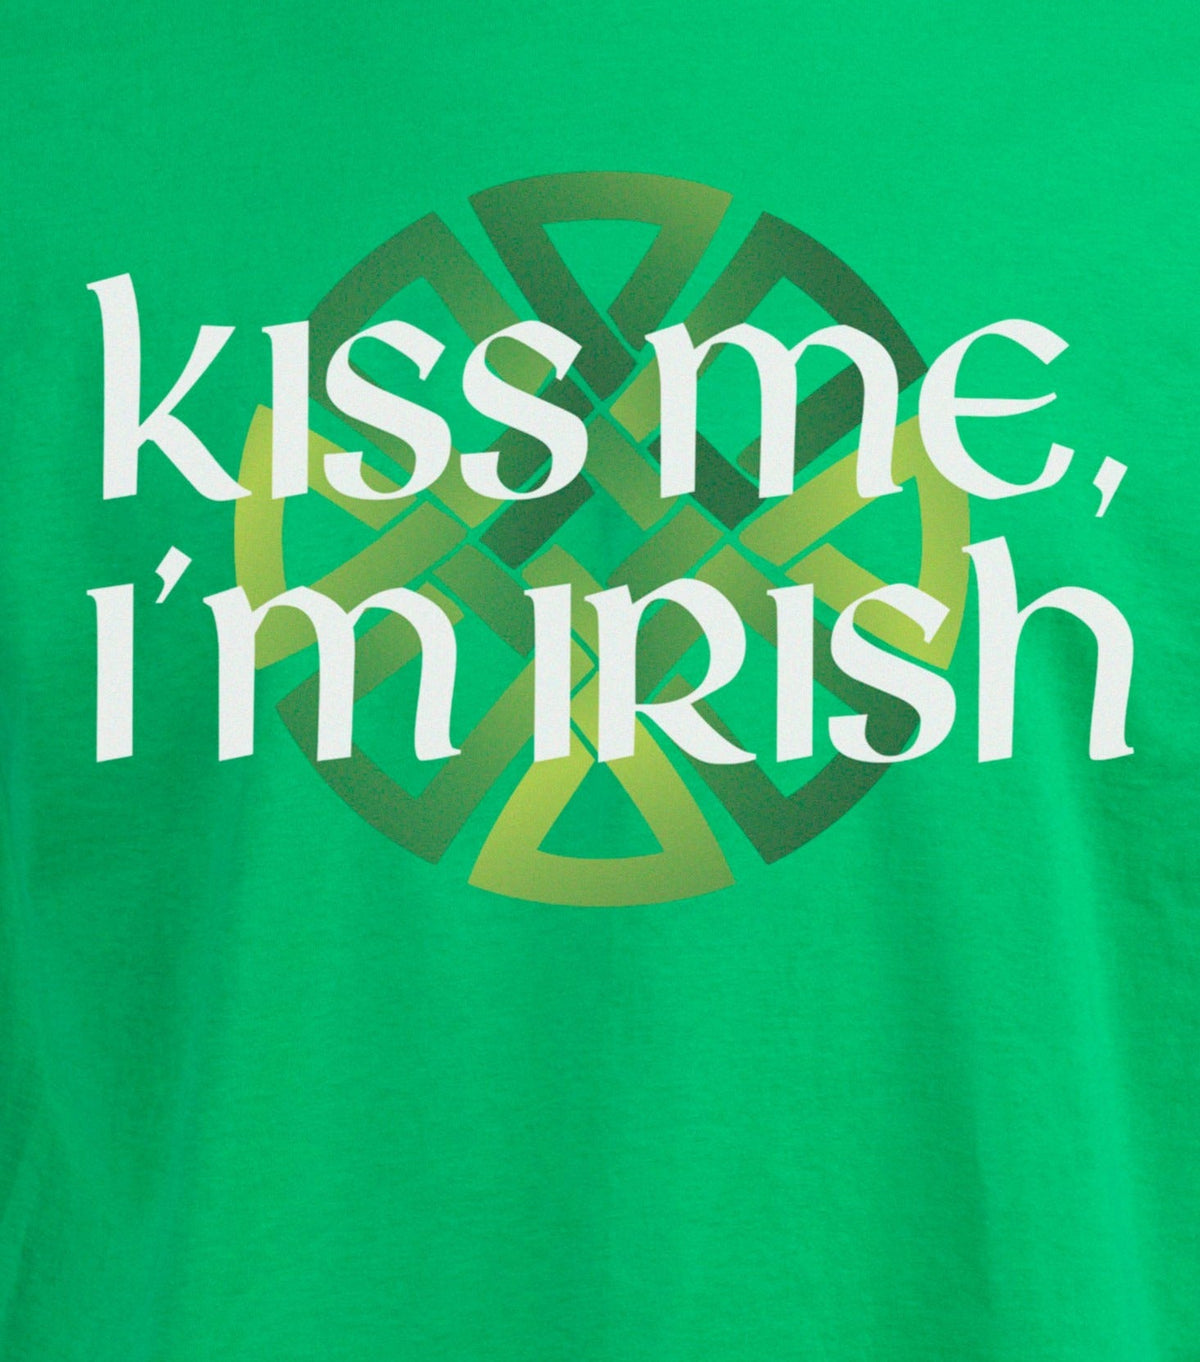 Kiss Me, I'm Irish St. Patrick's Day T-shirt - Men's/Unisex